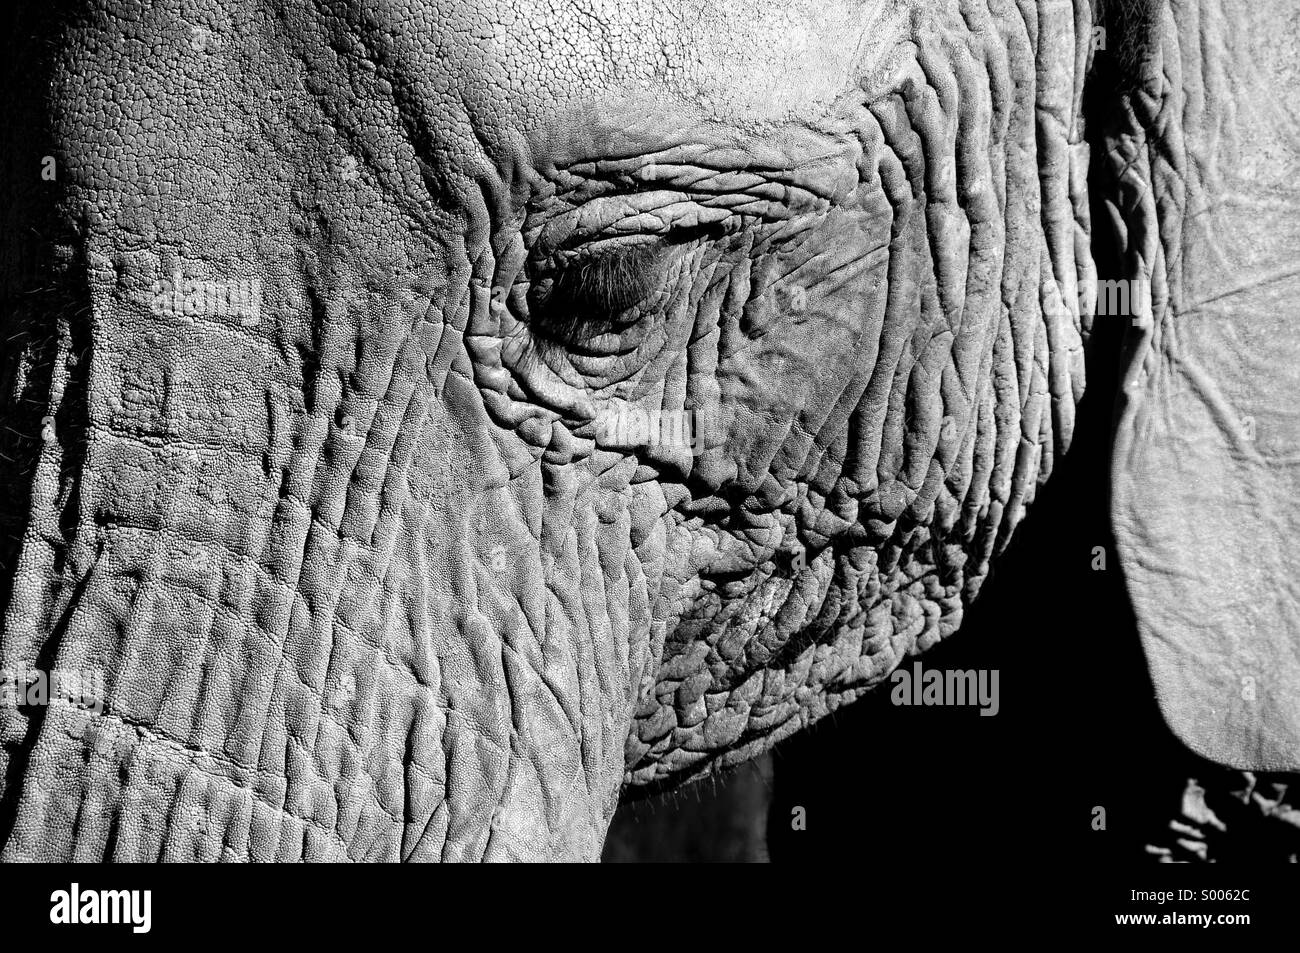 Elephant, eye, wrinkles, ear, majestic, peaceful, gentle, close up, eyelashes, trunk, animal, threatened, large, Stock Photo